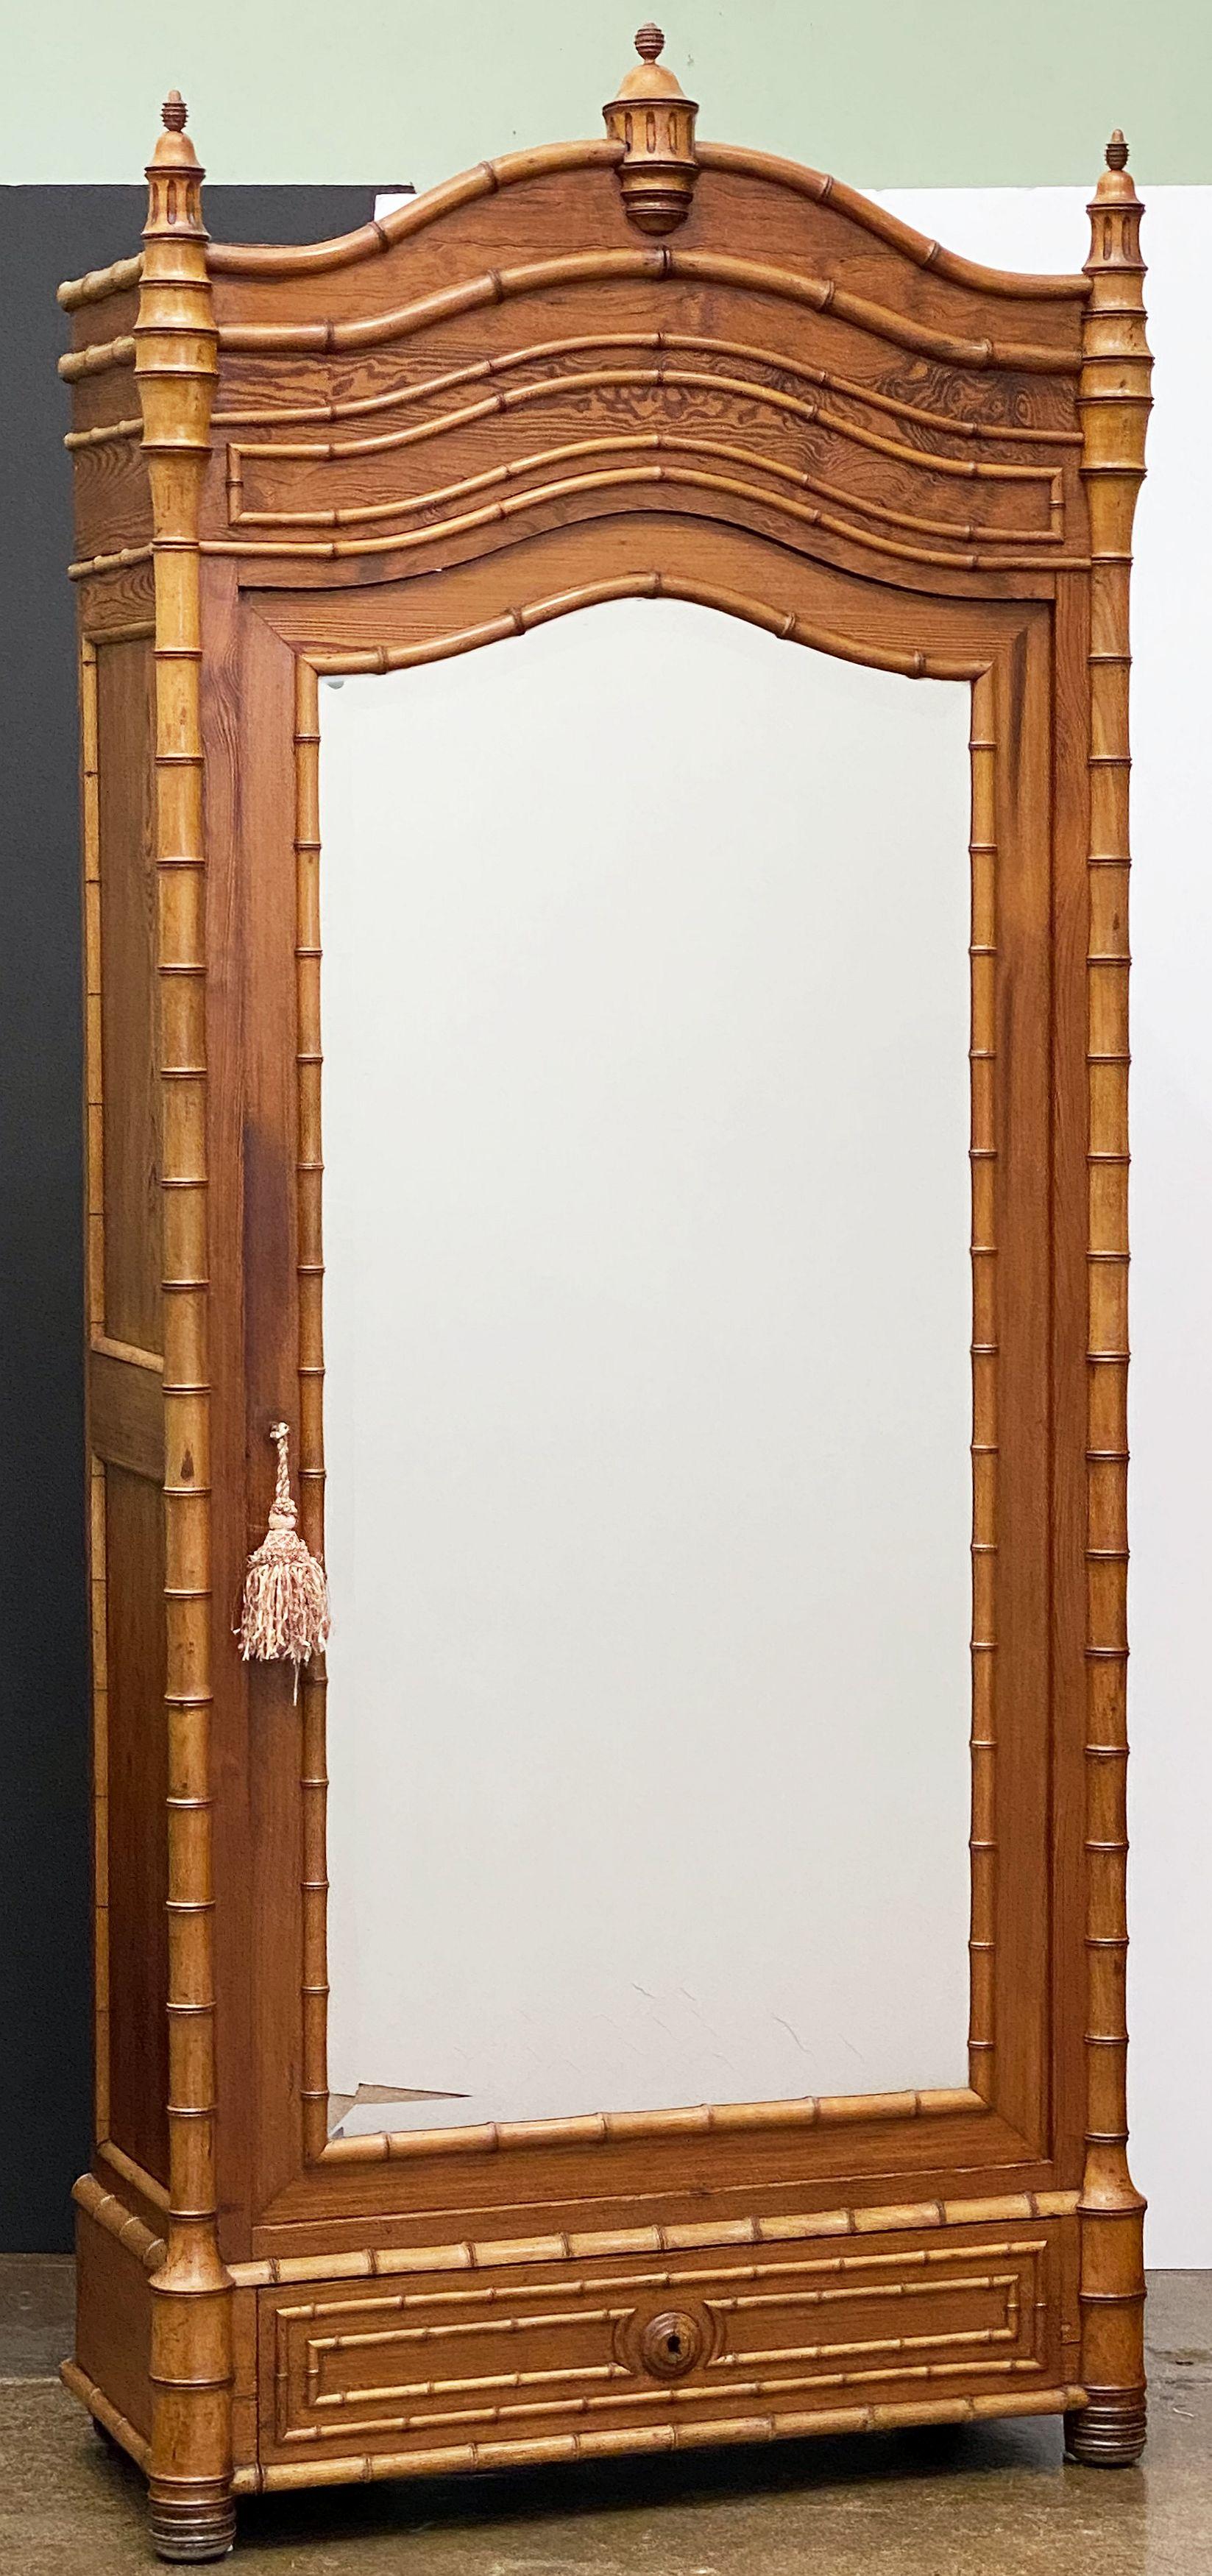 Eine schöne Französisch faux Bambus Armoire (oder Bücherregal und Vitrine) der langen Blatt Kiefer und Kirsche, mit einem Serpentin Baldachin oben mit gedrehten dekorativen Kreuzblumen, über eine gerahmte abgeschrägte Spiegeltür umschließt einen